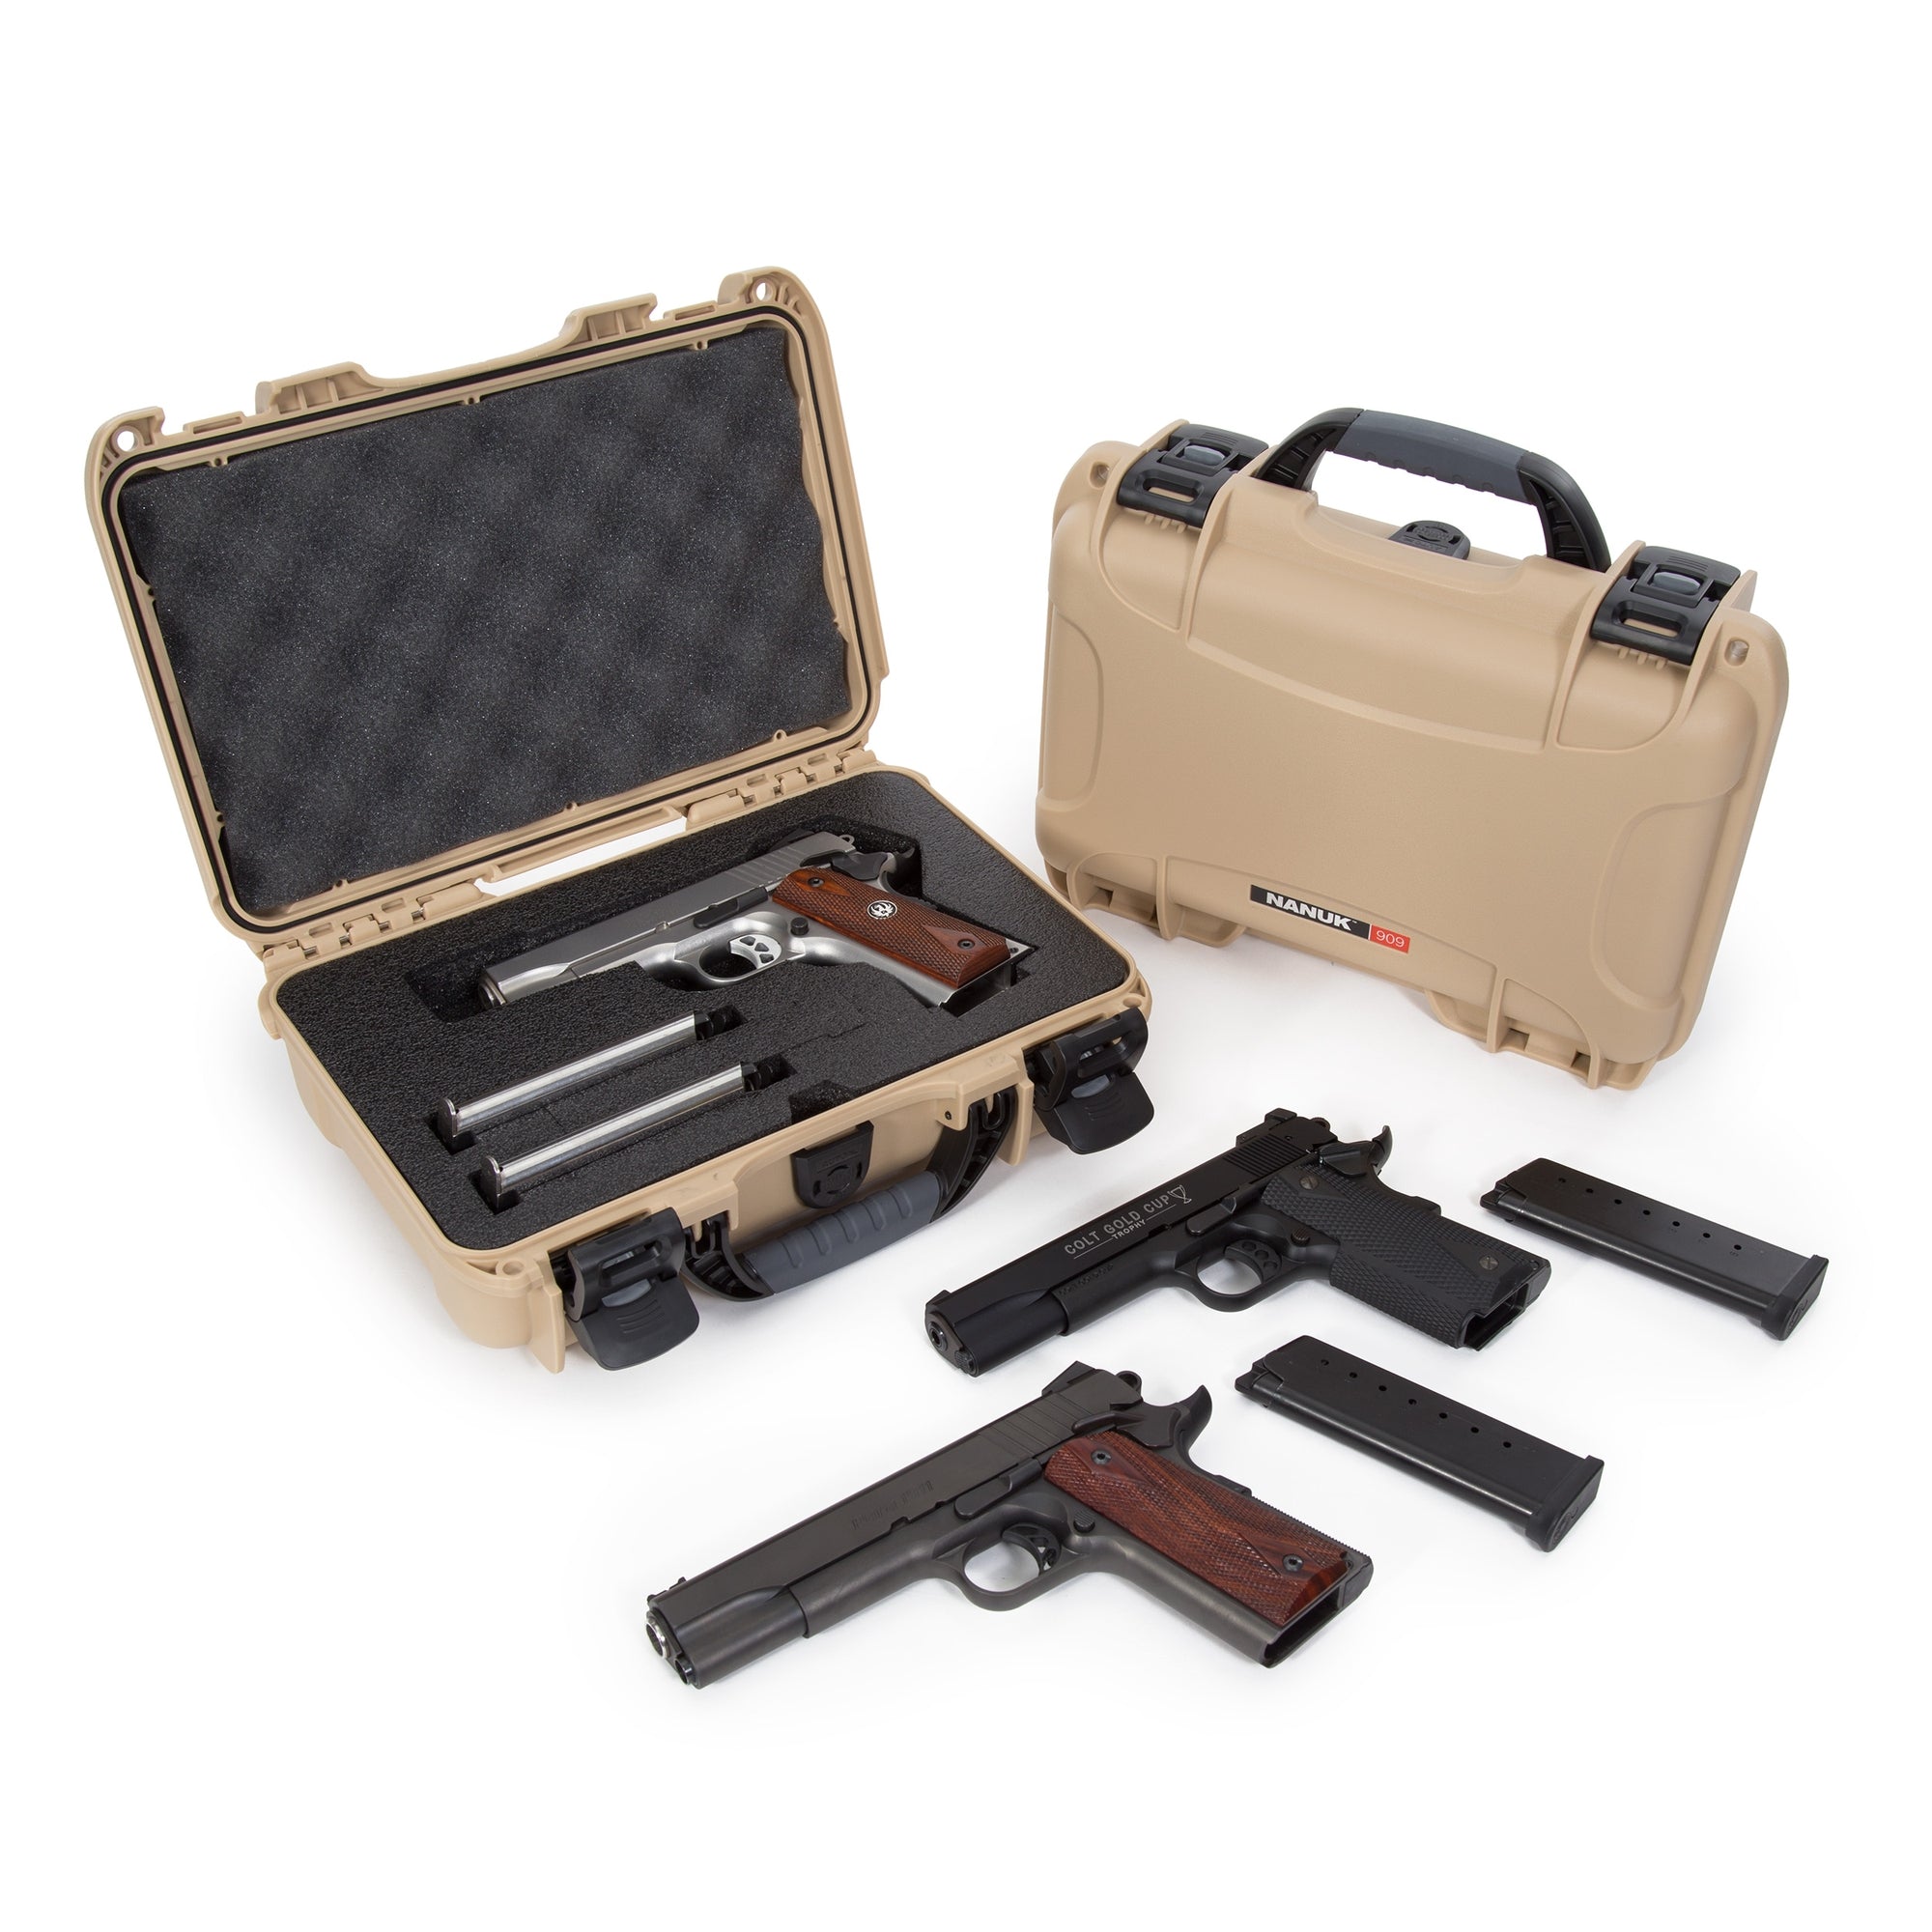 Nanuk 909 Pistol Case in Tan Color - A Small Case for one handgun